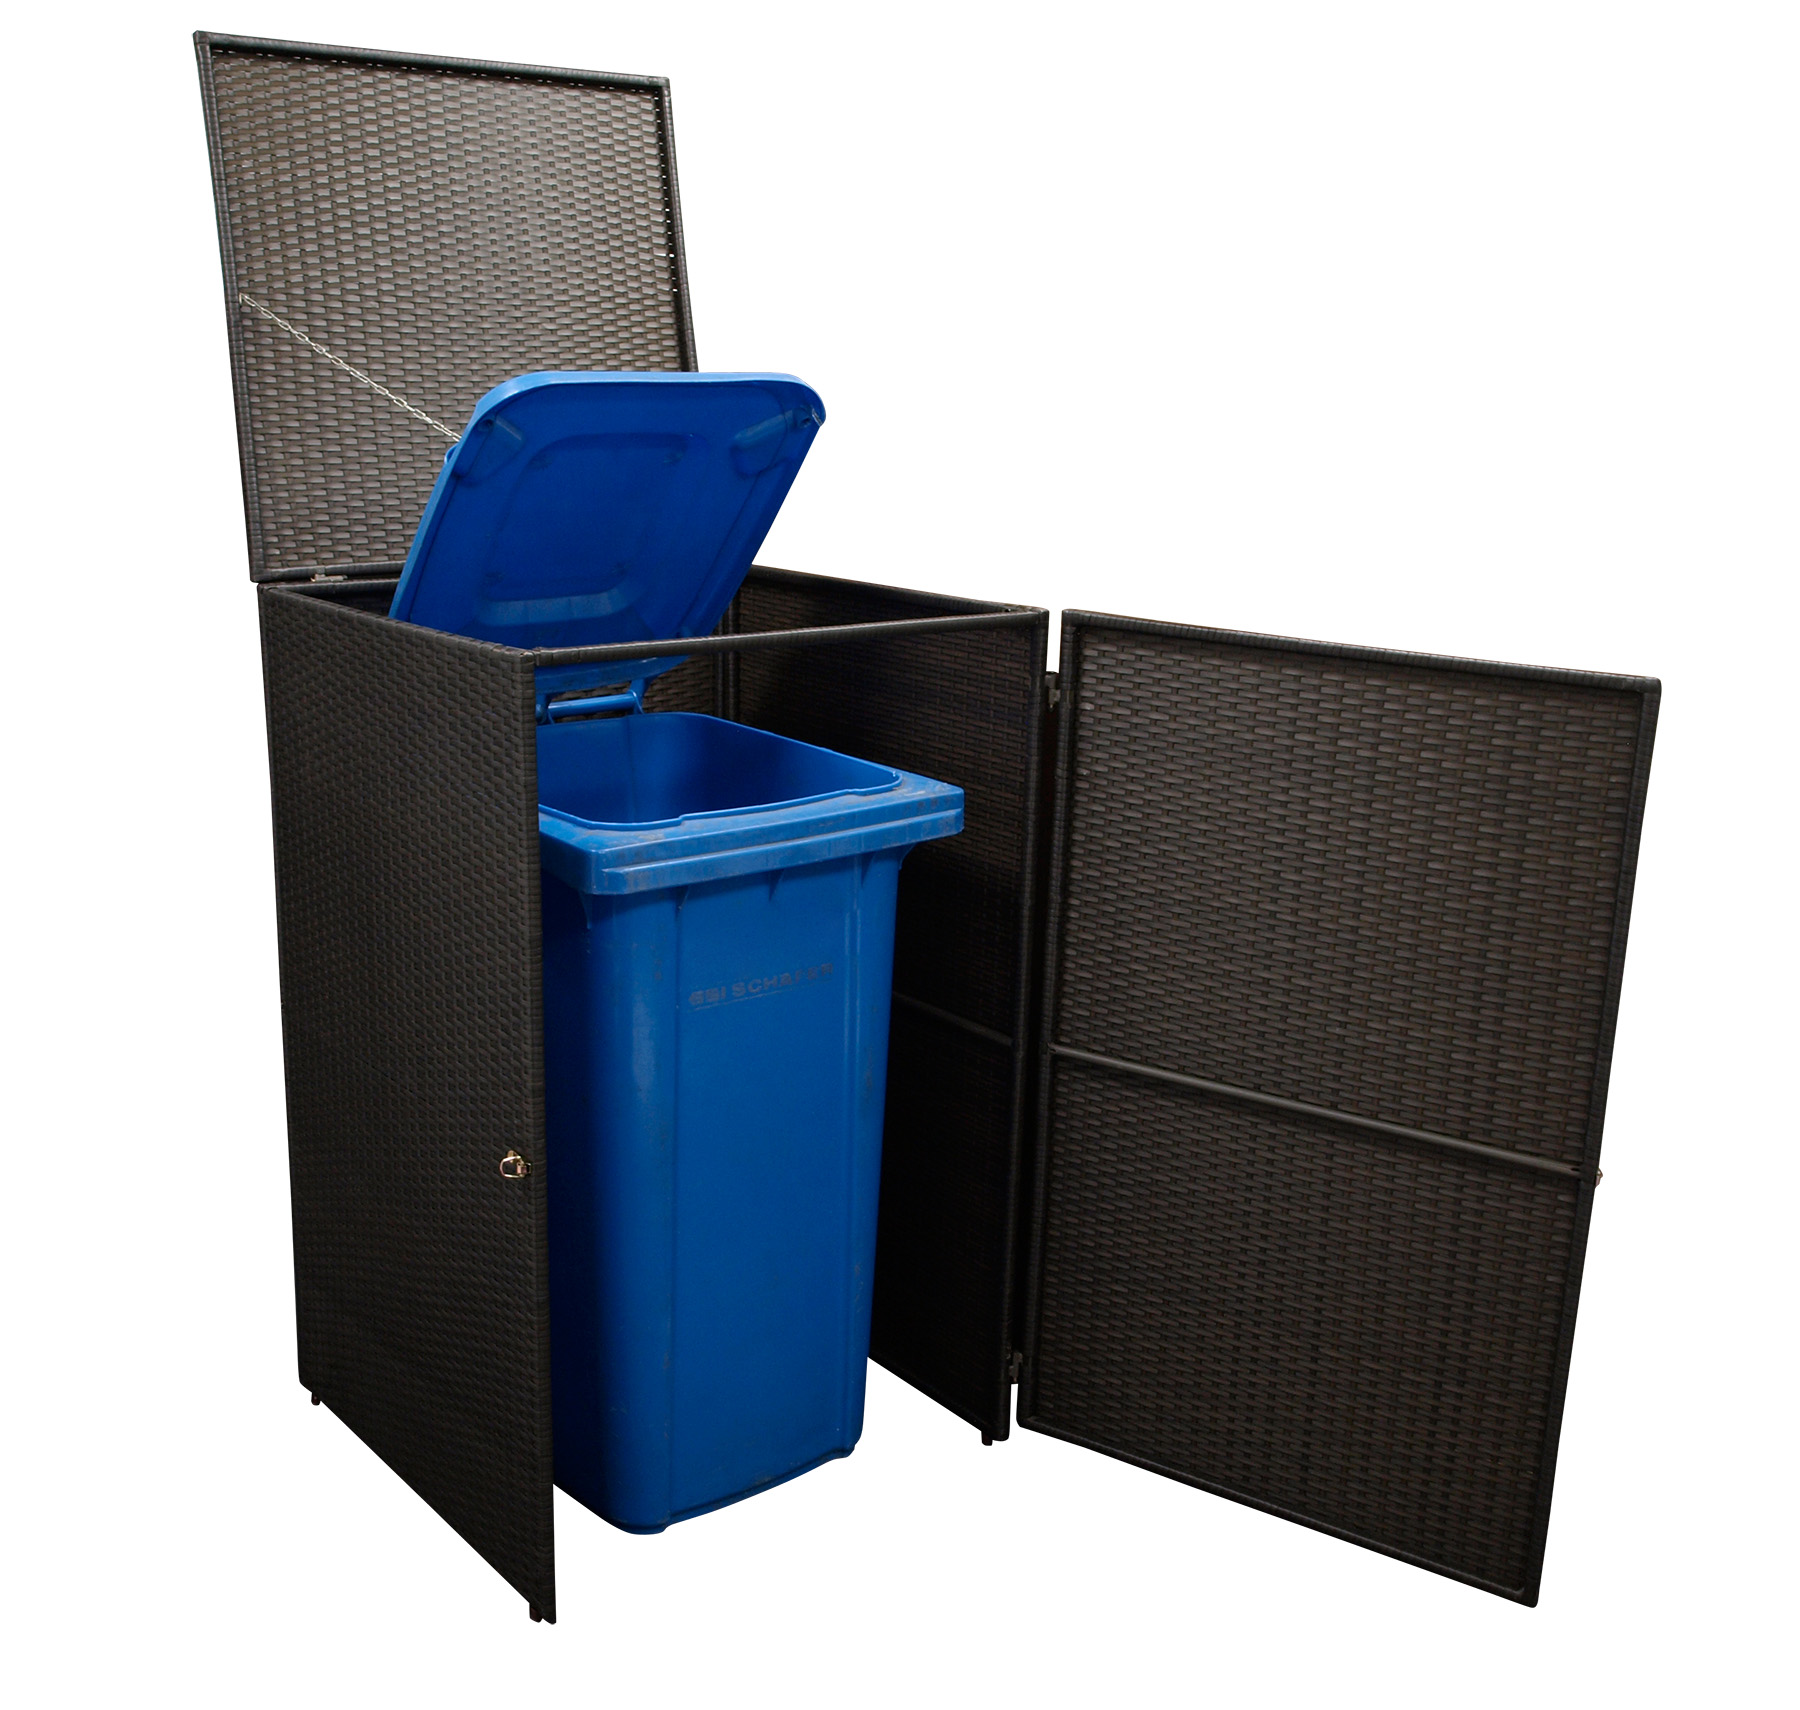 Mülltonnenbox Stahl + Polyrattan mocca, 64x66x109cm, für Tonnen bis 120 Liter